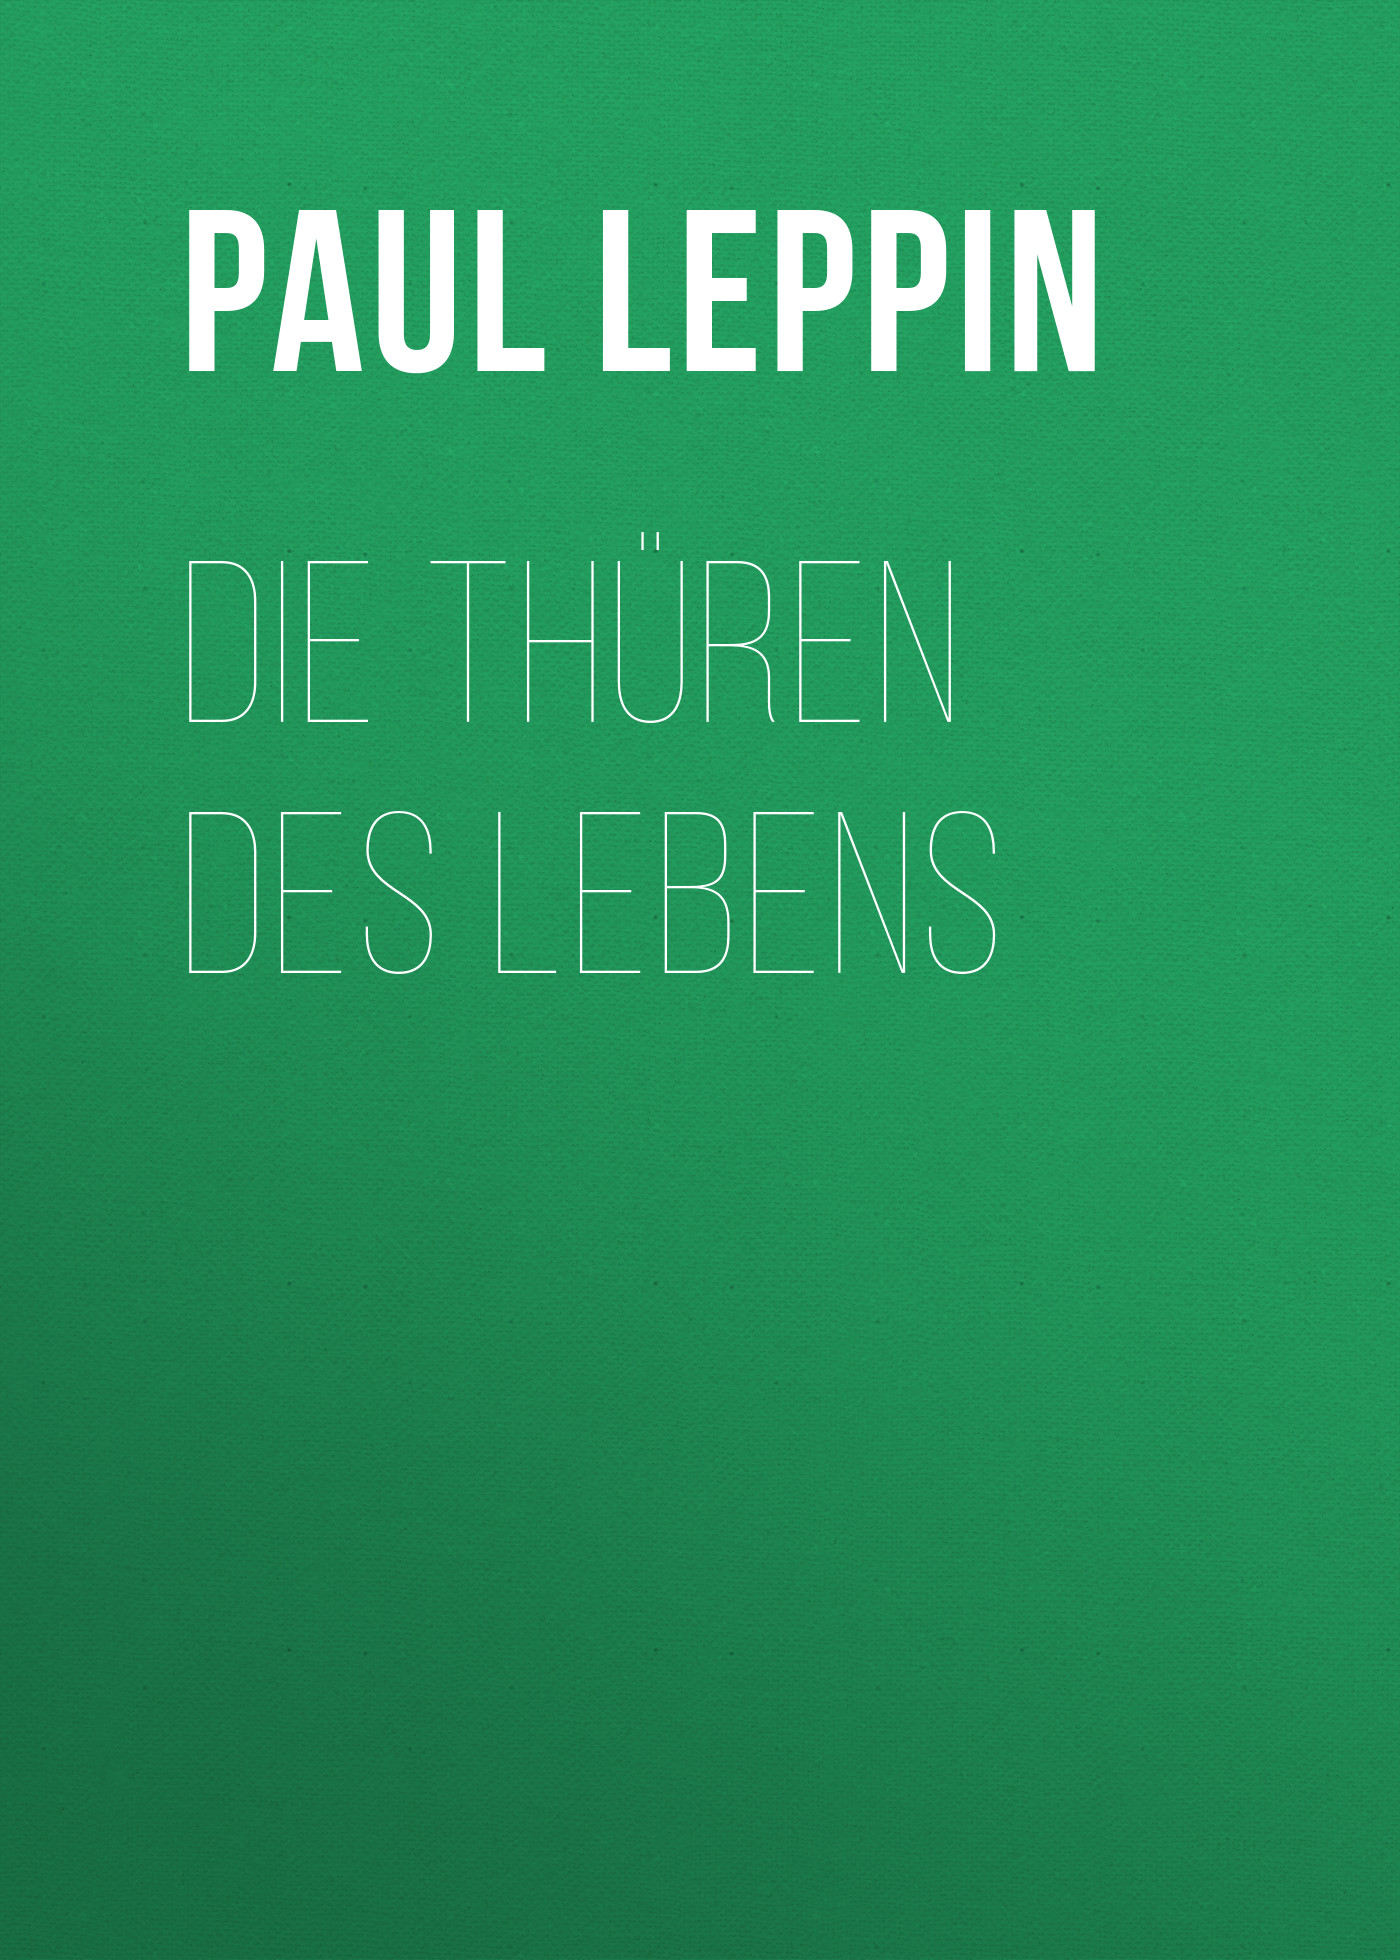 Книга Die Thüren des Lebens из серии , созданная Paul Leppin, может относится к жанру Зарубежная классика. Стоимость электронной книги Die Thüren des Lebens с идентификатором 48634092 составляет 0 руб.